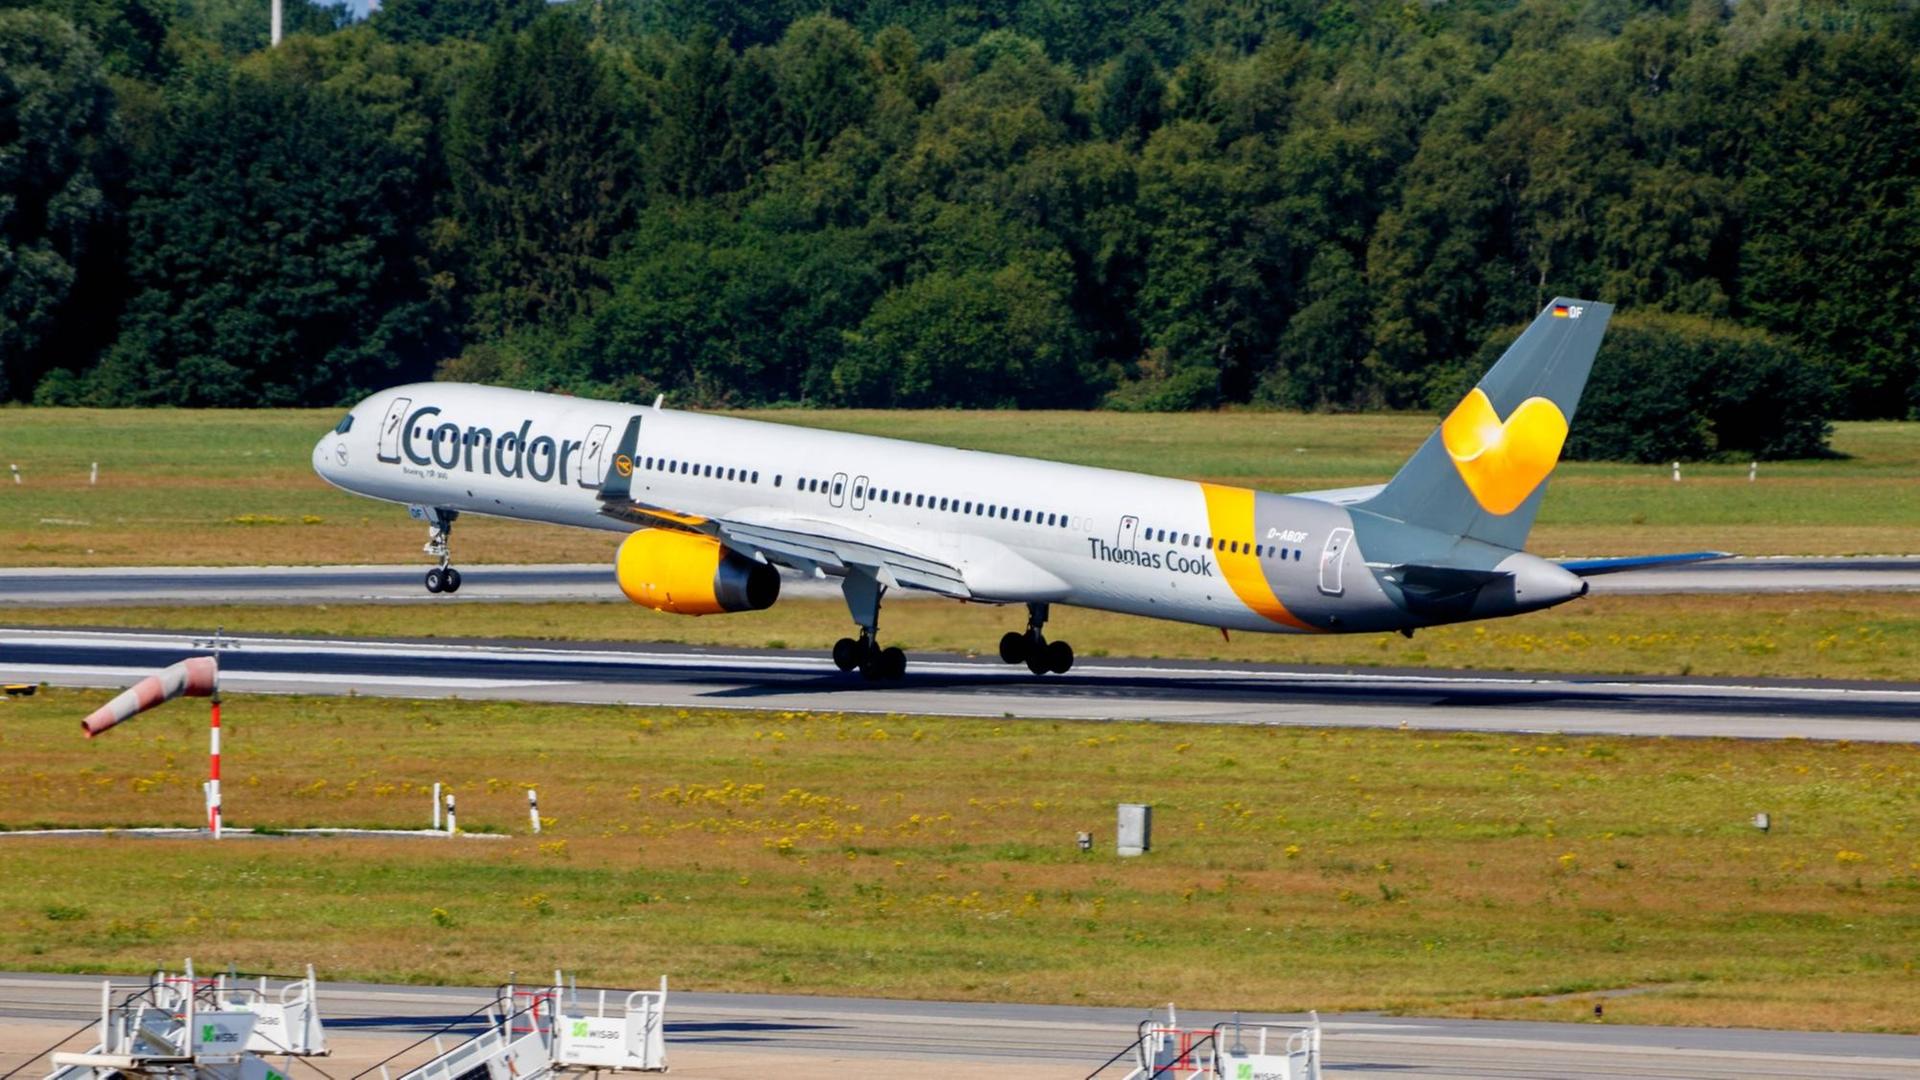 Das Bild zeigt eine Boeing 757 der deutschen Fluggesellschaft Condor beim Abheben von einer Startbahn.